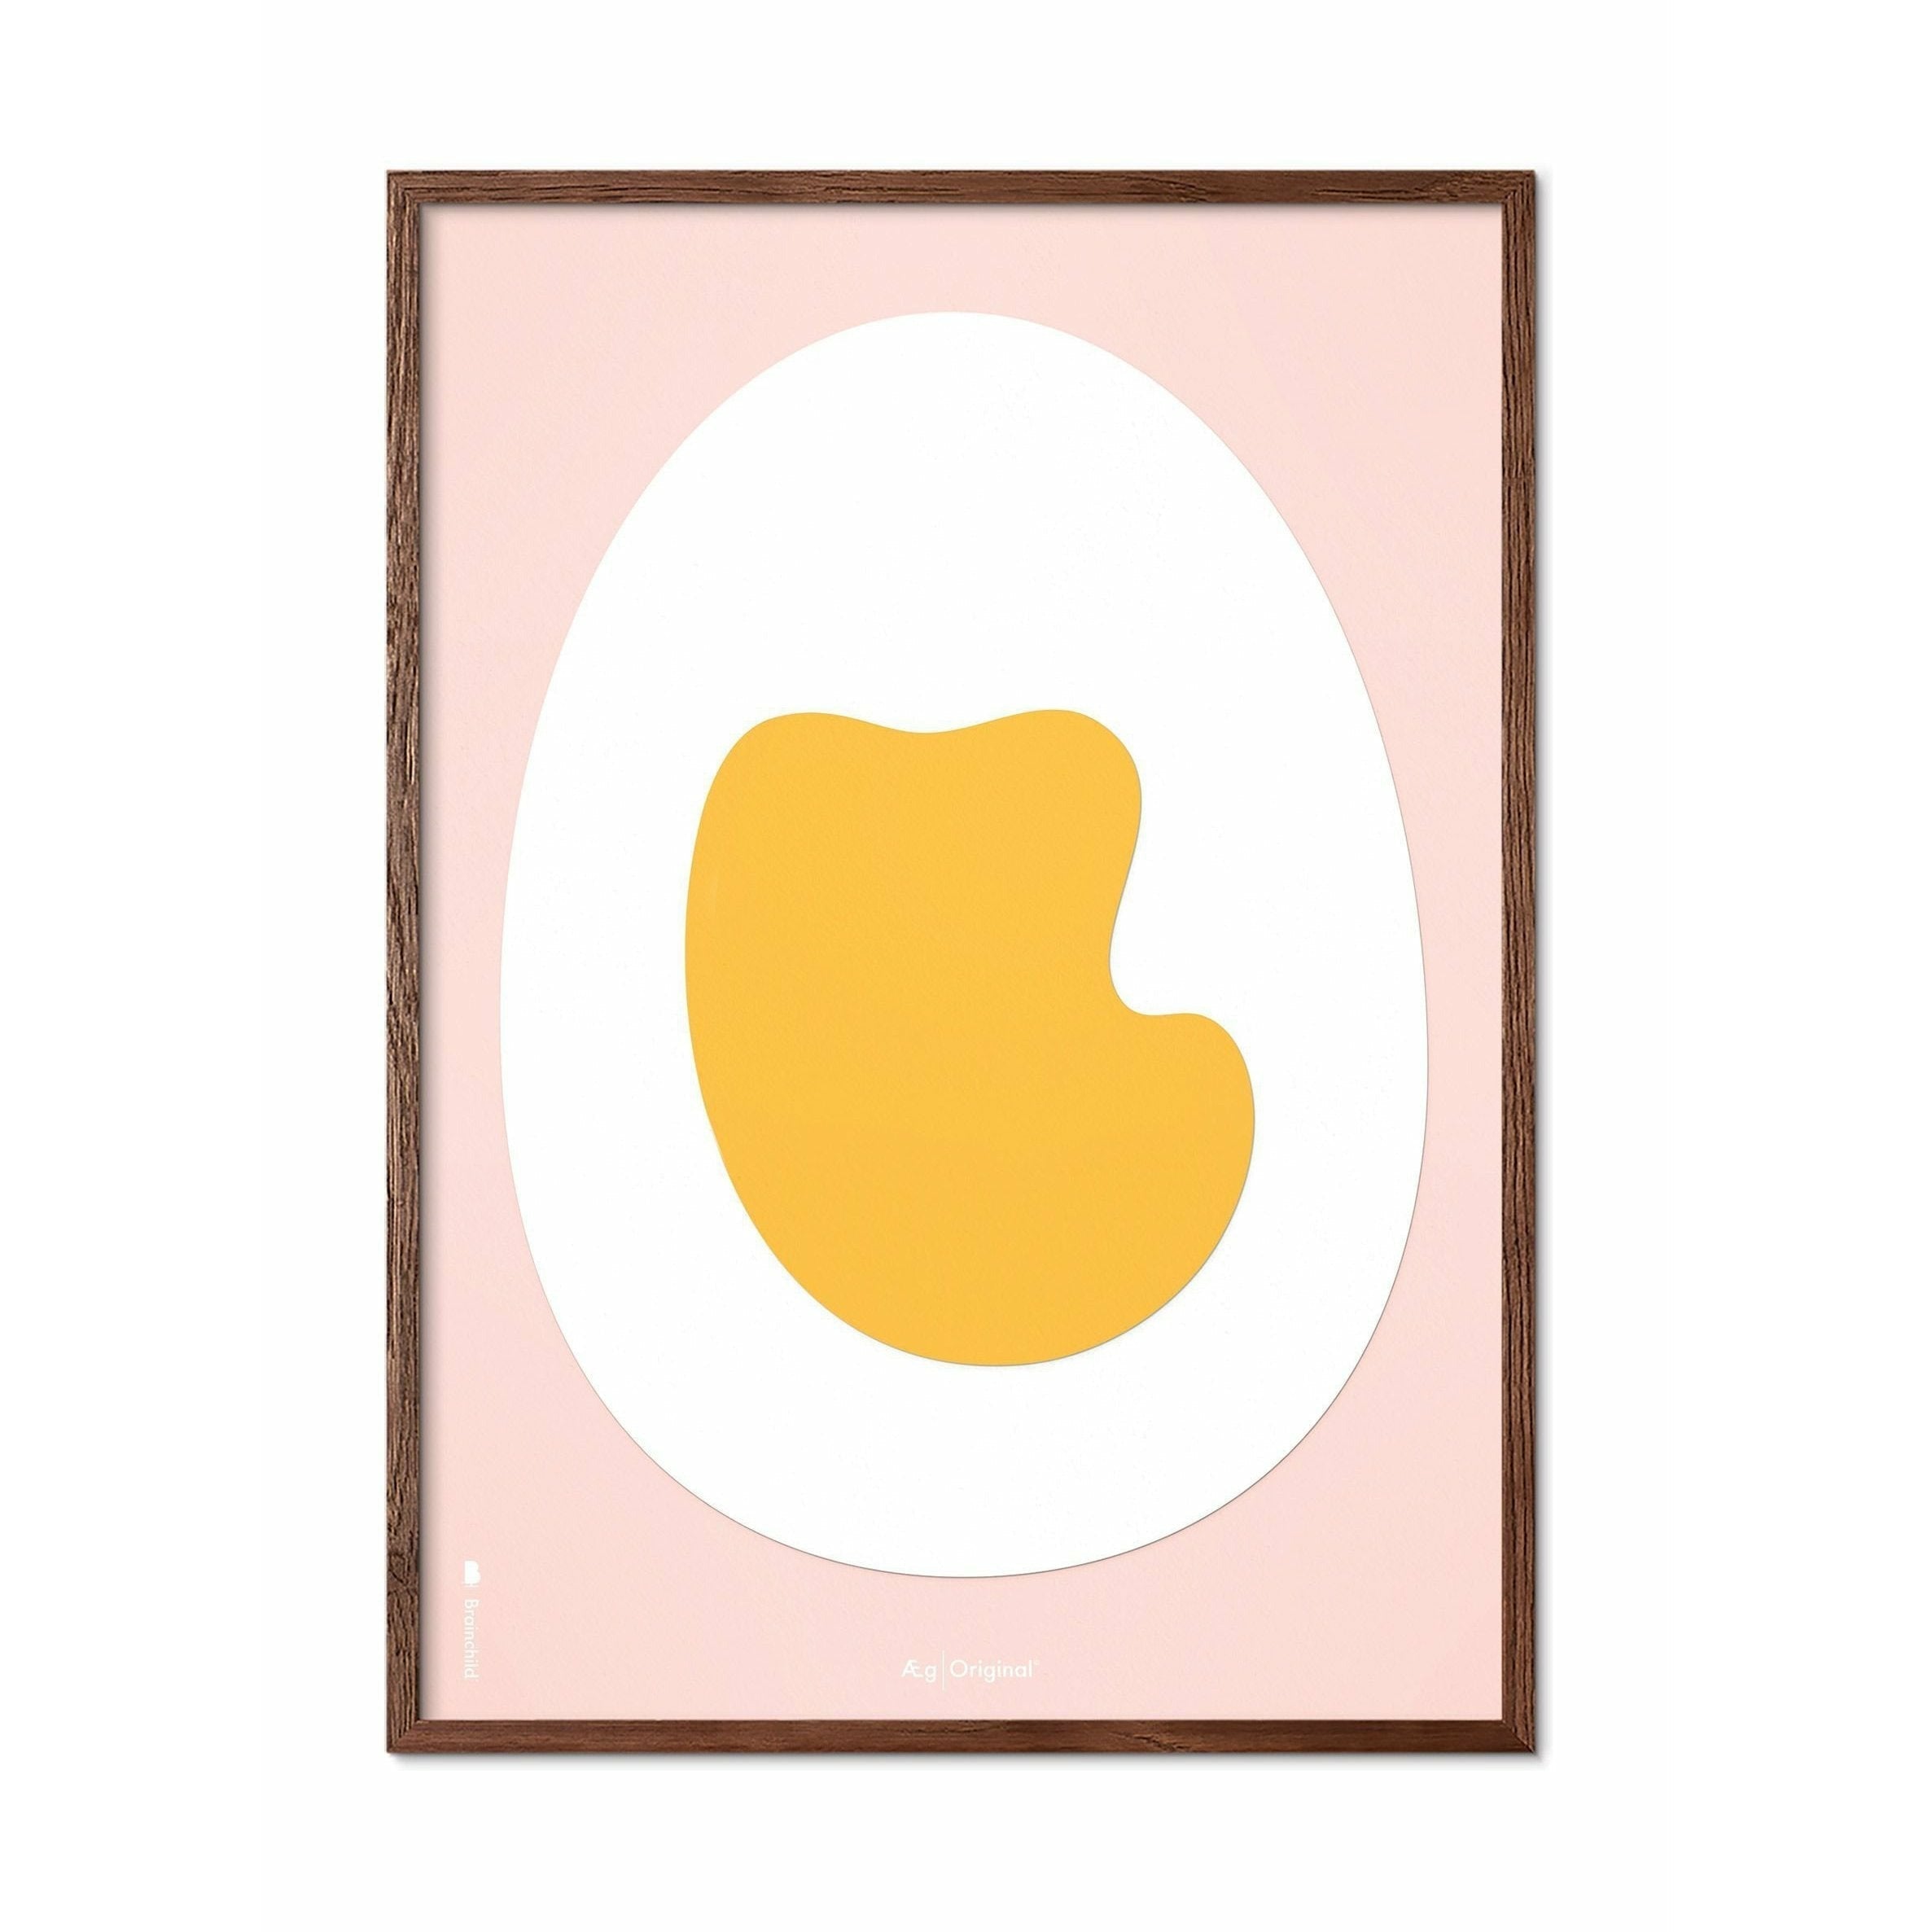 Póster de clip de papel de huevo de creación, marco hecho de madera oscura de 70x100 cm, fondo rosa